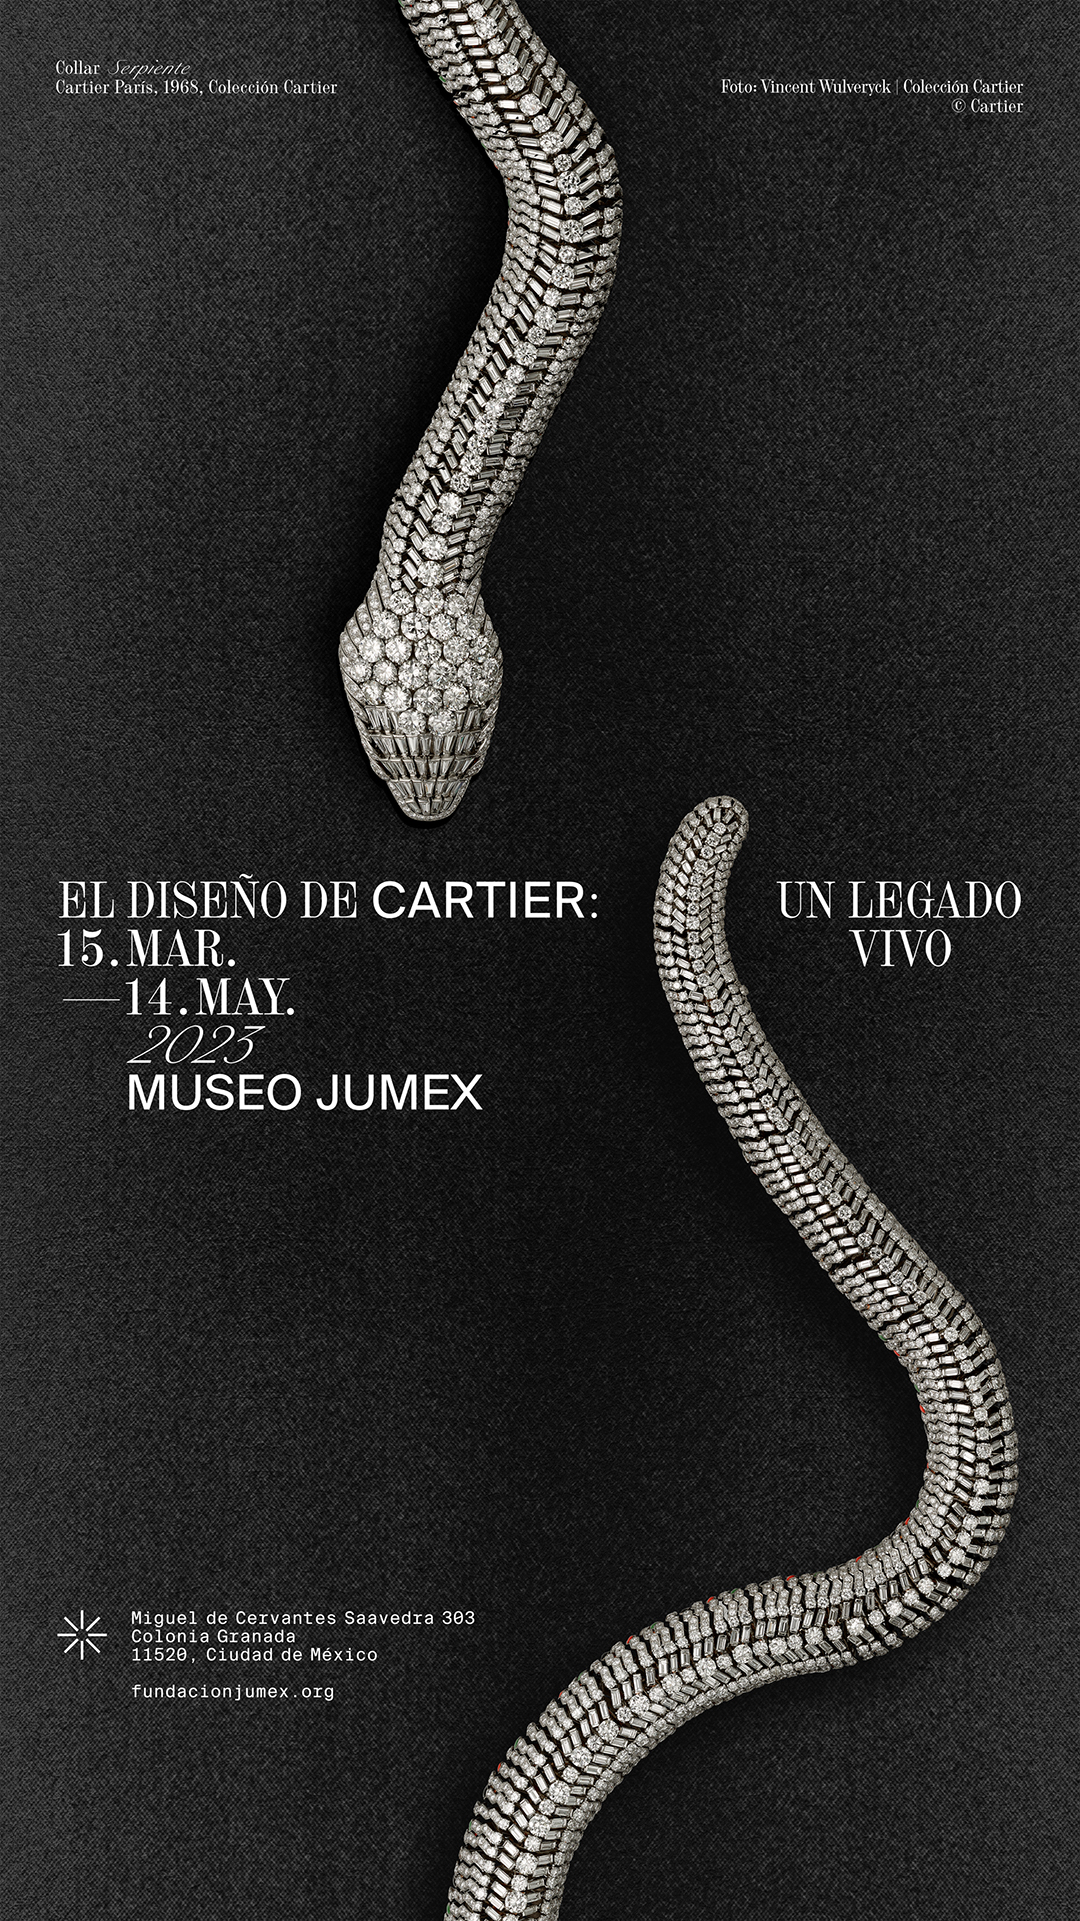 El diseño de Cartier – Museo Jumex